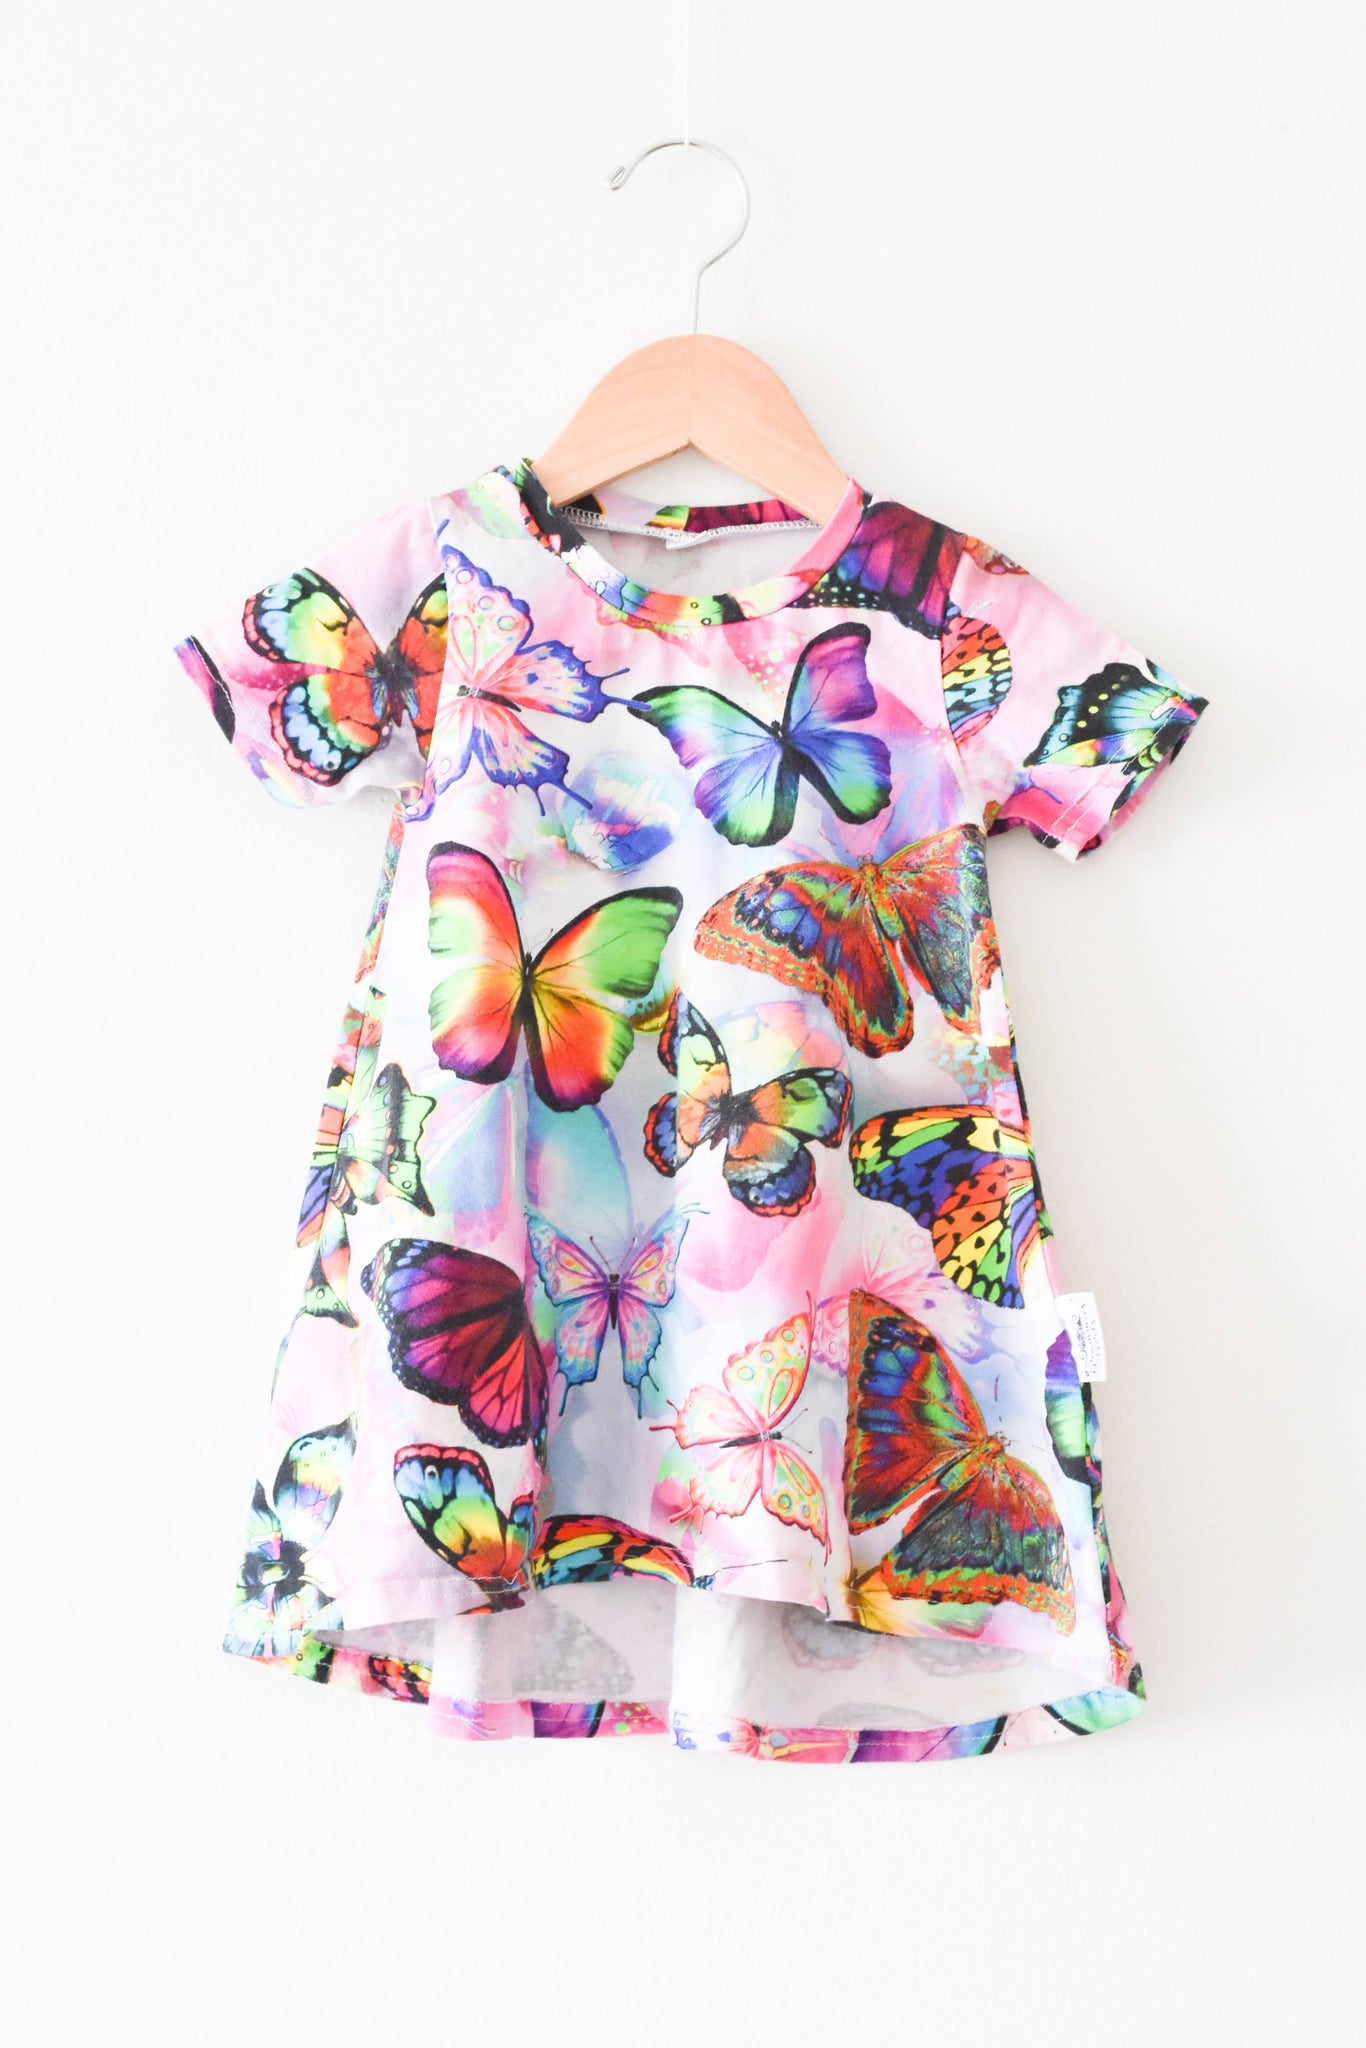 Handmade Grammies Girls Butterfly Dress • 18-24 months